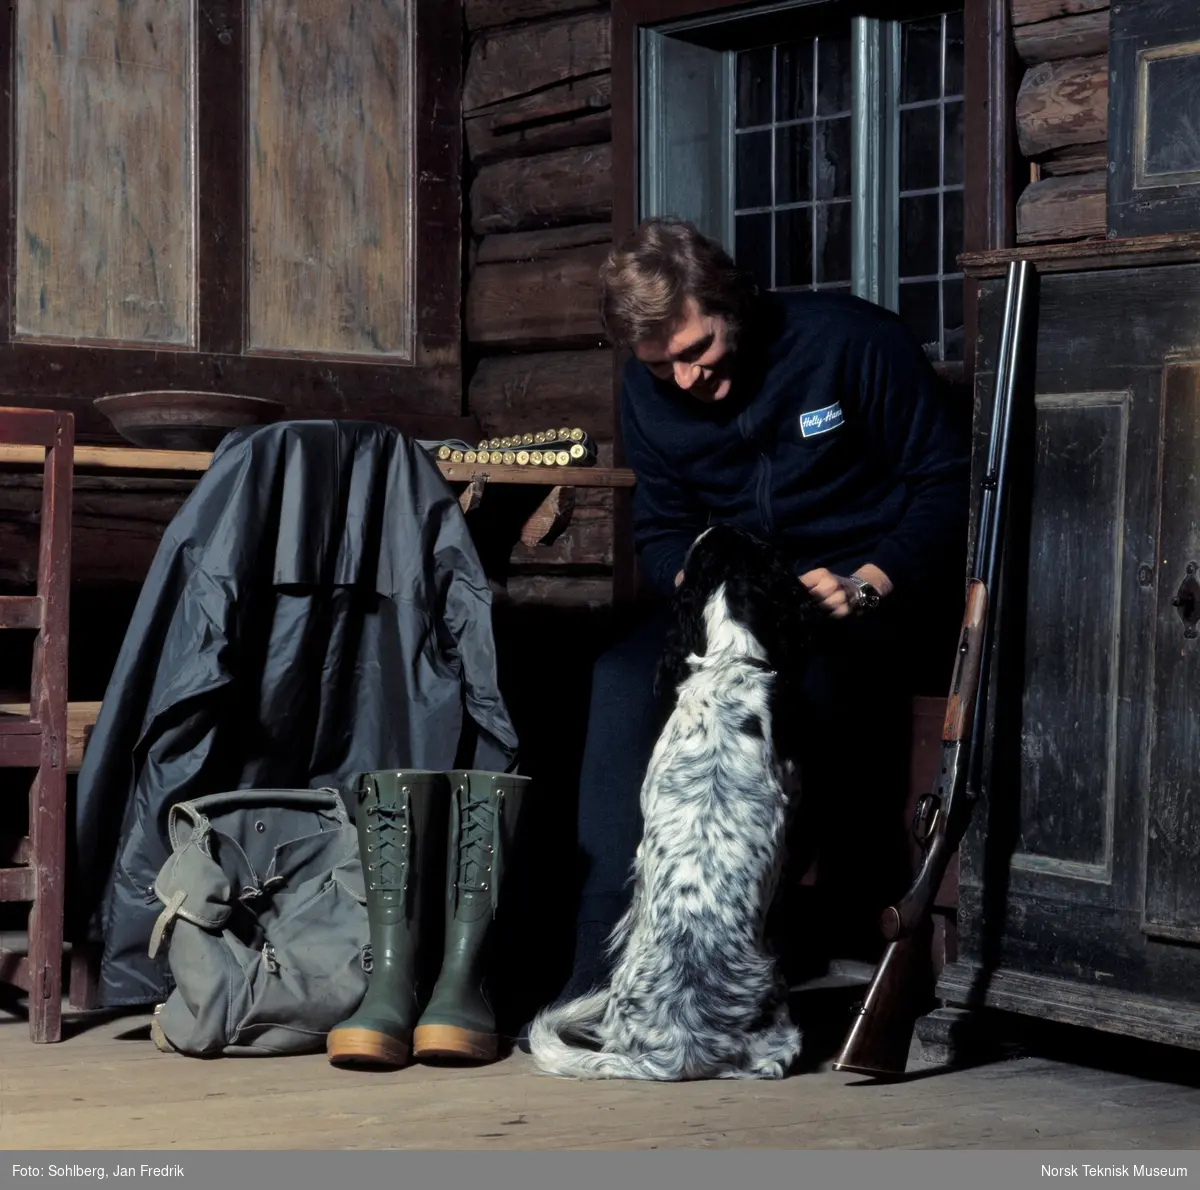 Tidlig norsk motefotografi. Mannlig modell viser fram jaktantrekk. Ved siden av ham står jaktgeværet klart. Han klapper en hund, engelsk setter.